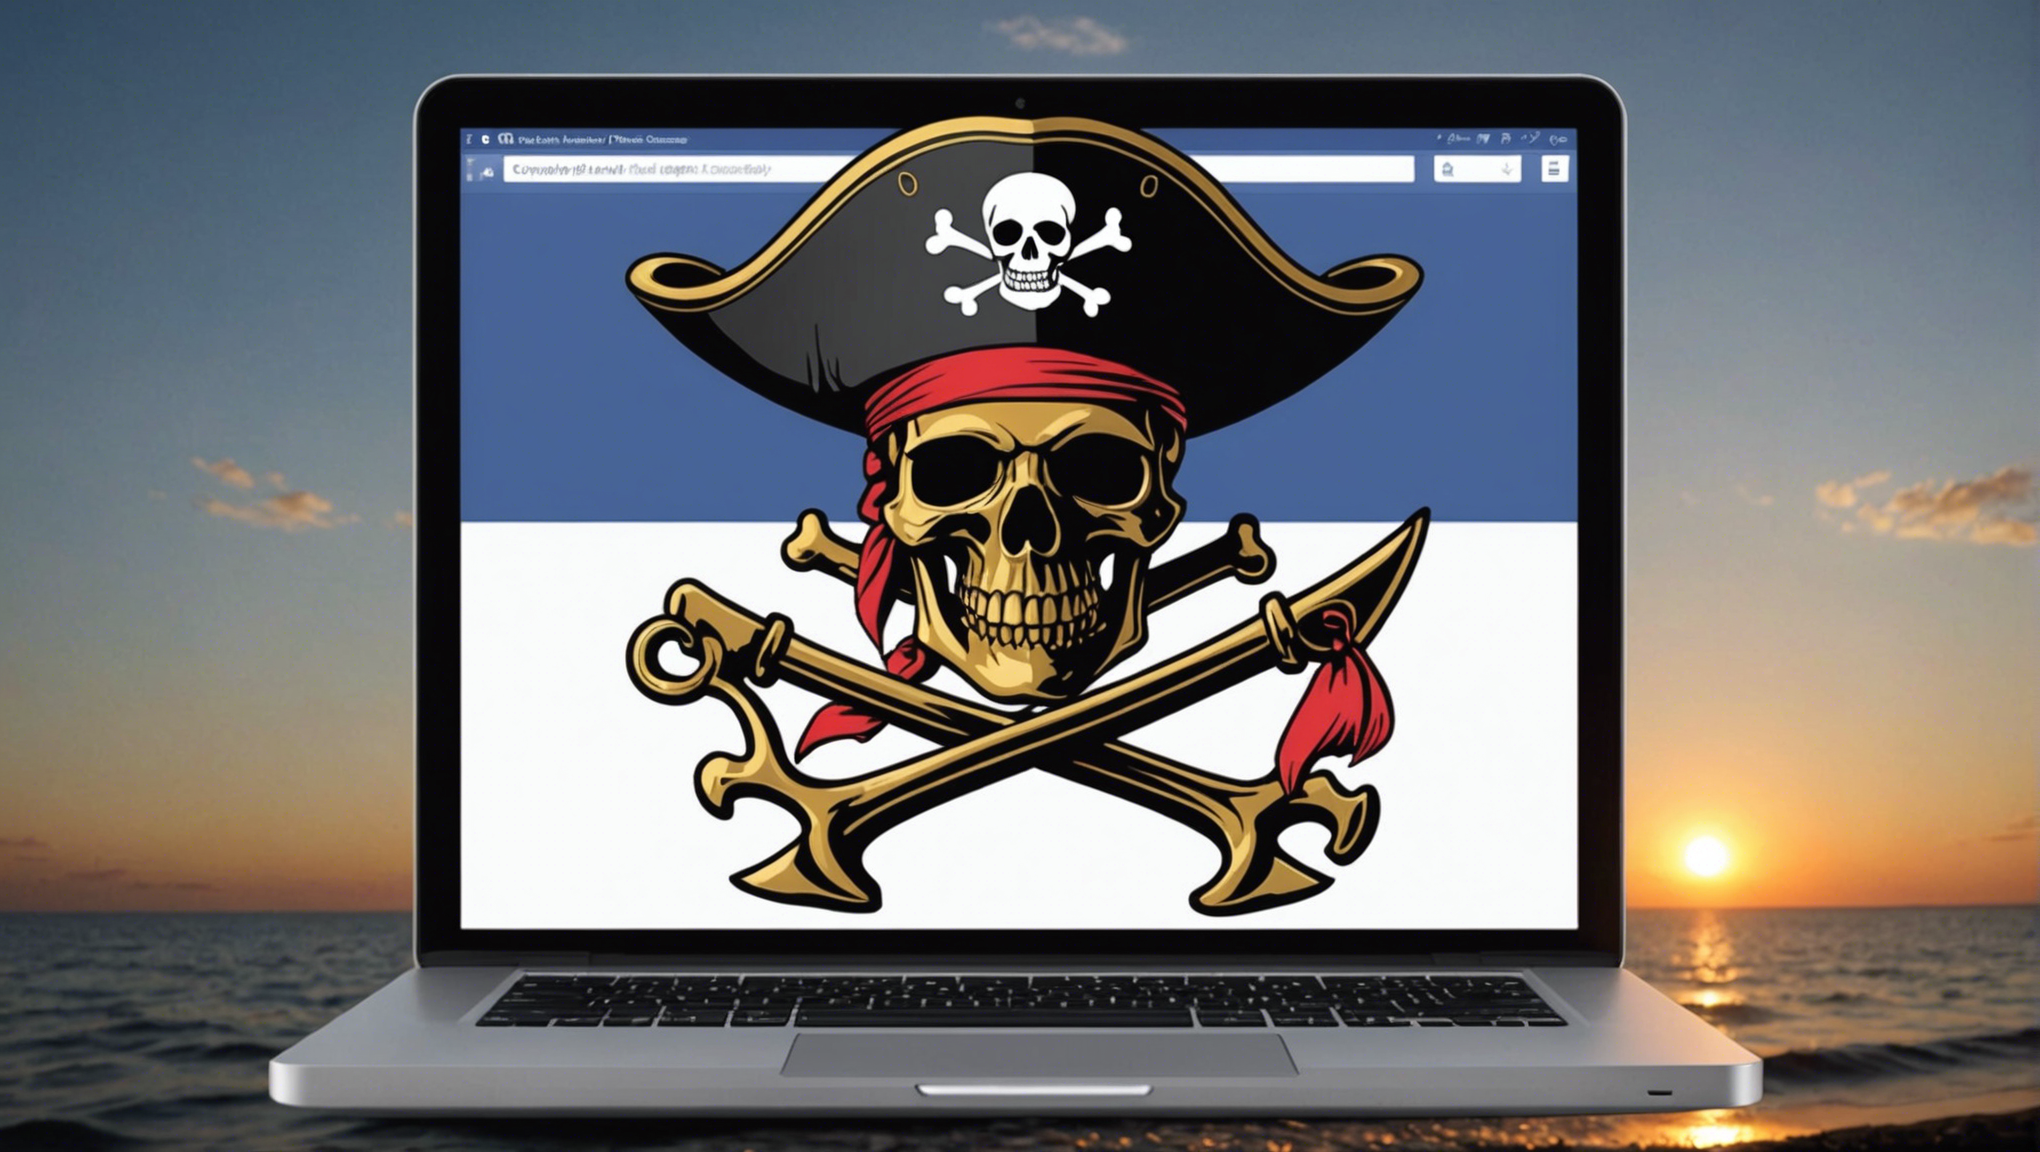 découvrez comment protéger votre compte facebook des piratages et sécuriser vos informations personnelles avec nos conseils pratiques.